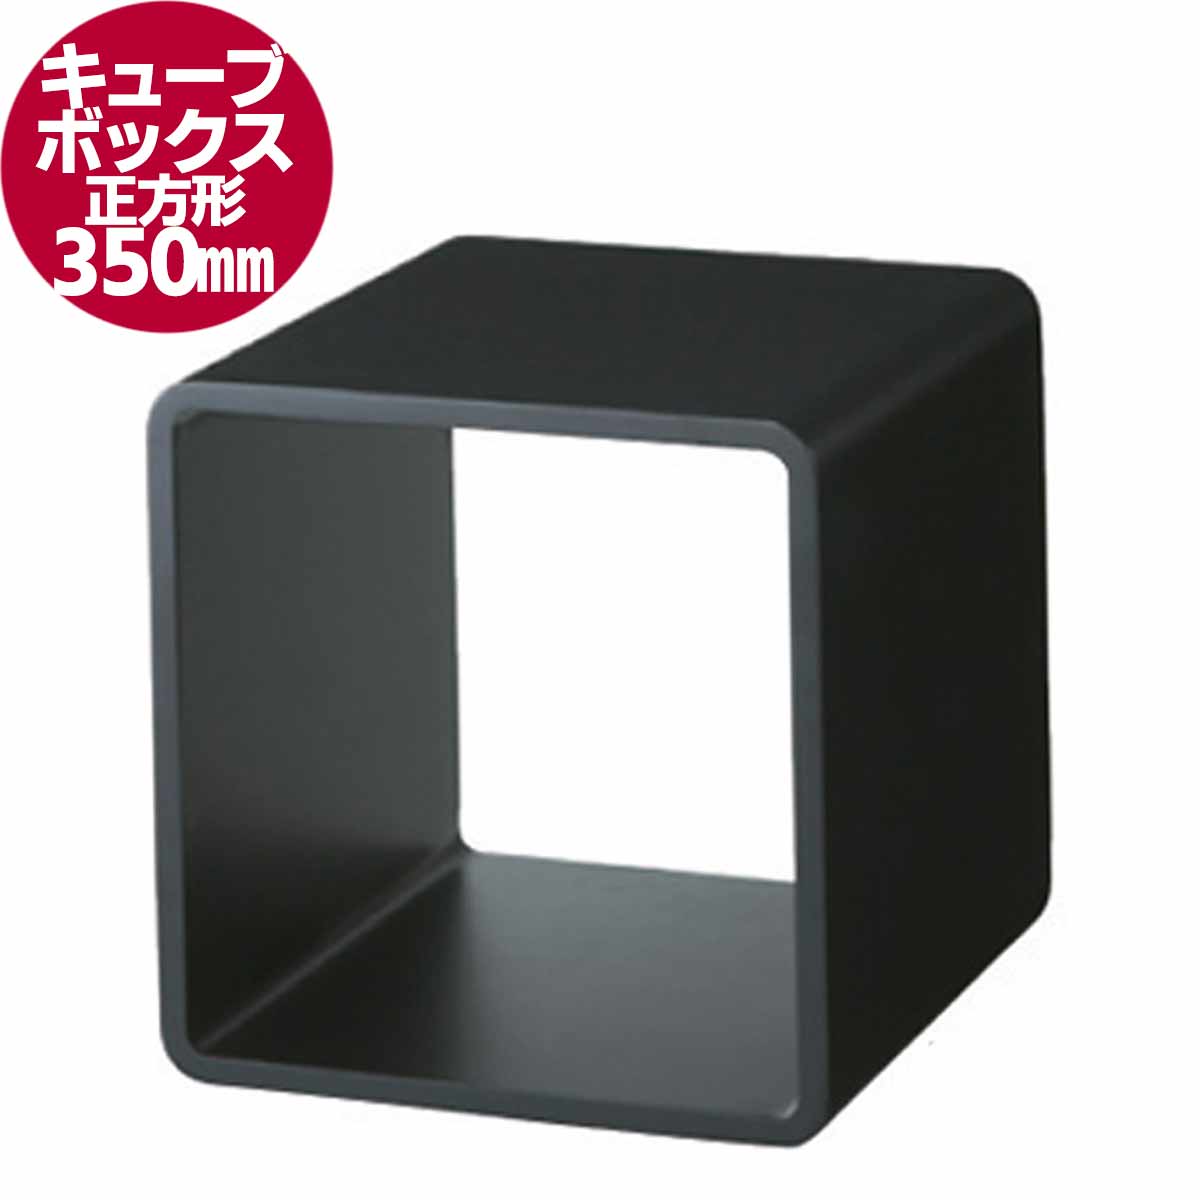 キューブボックス正方形(大) 黒